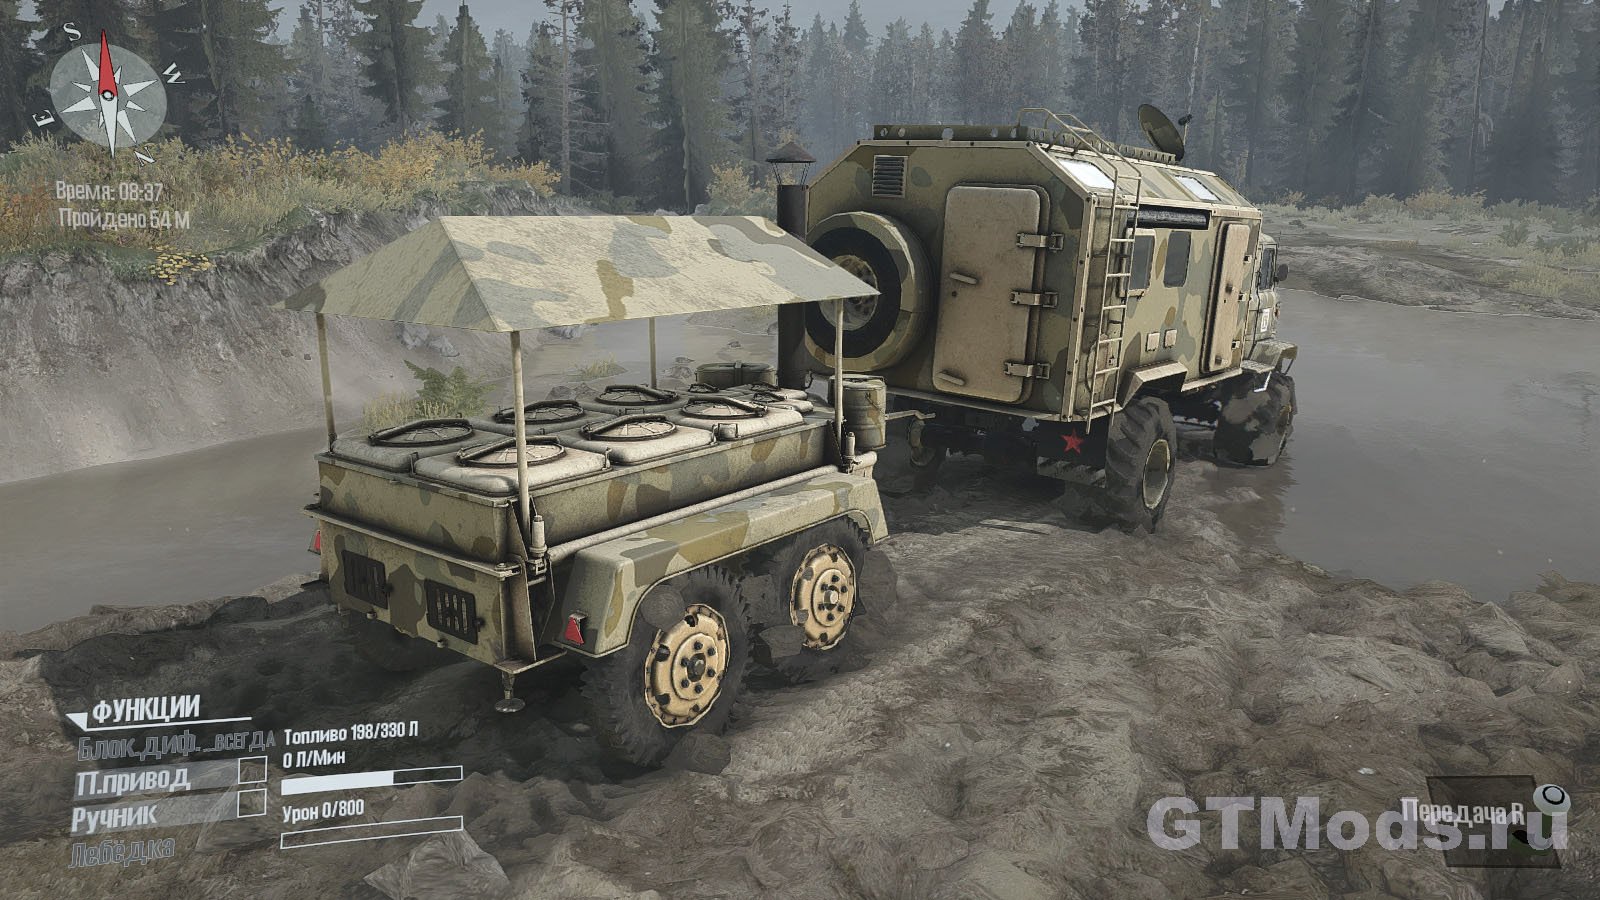 Мод ГАЗ-66RS "Баба Яга" для ST: MudRunner.